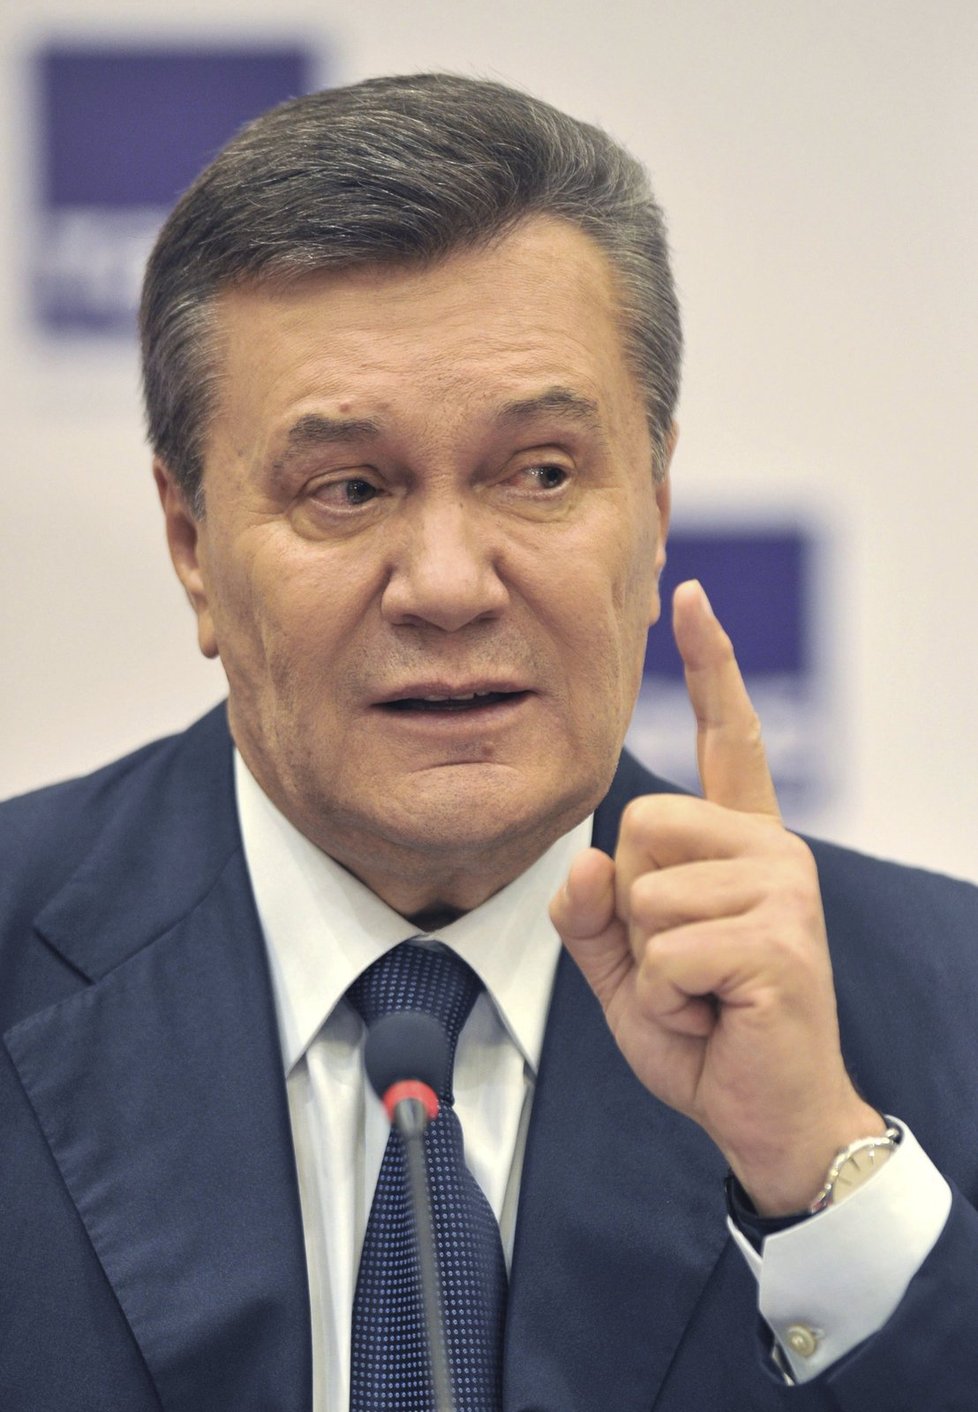 Bývalý ukrajinský prezident Viktor Janukovyč během dálkového výslechu řekl, že nedal rozkaz střílet do demonstrantů, a svaloval vinu na kancléře